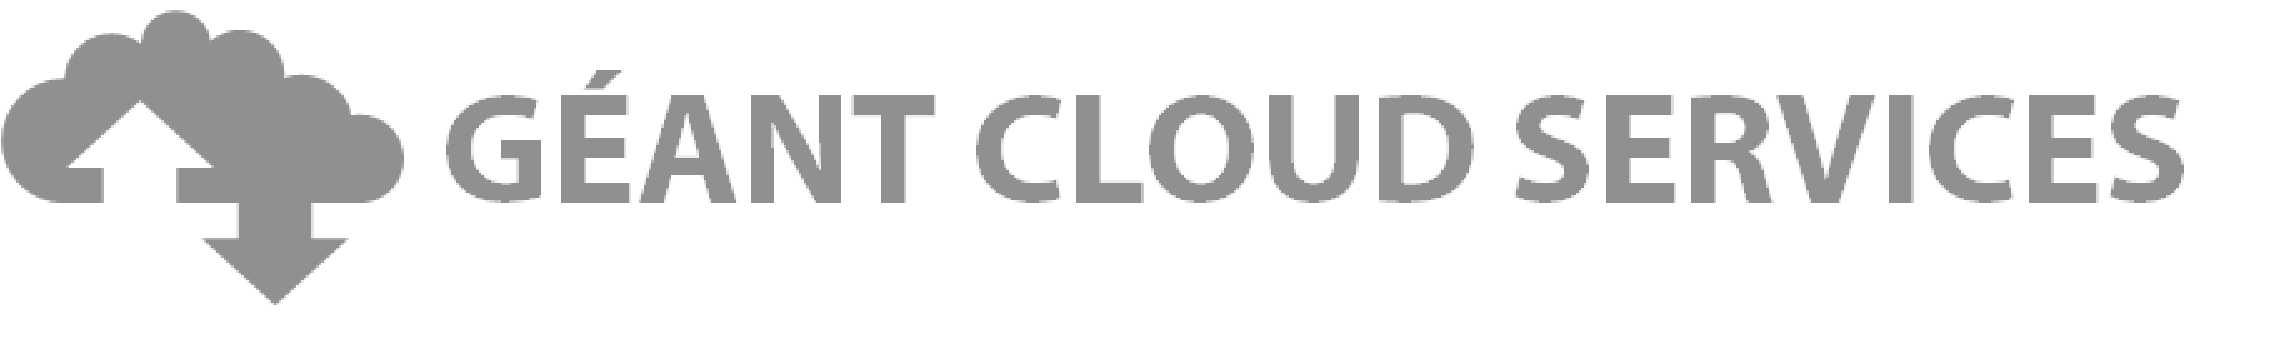 cloud services logo